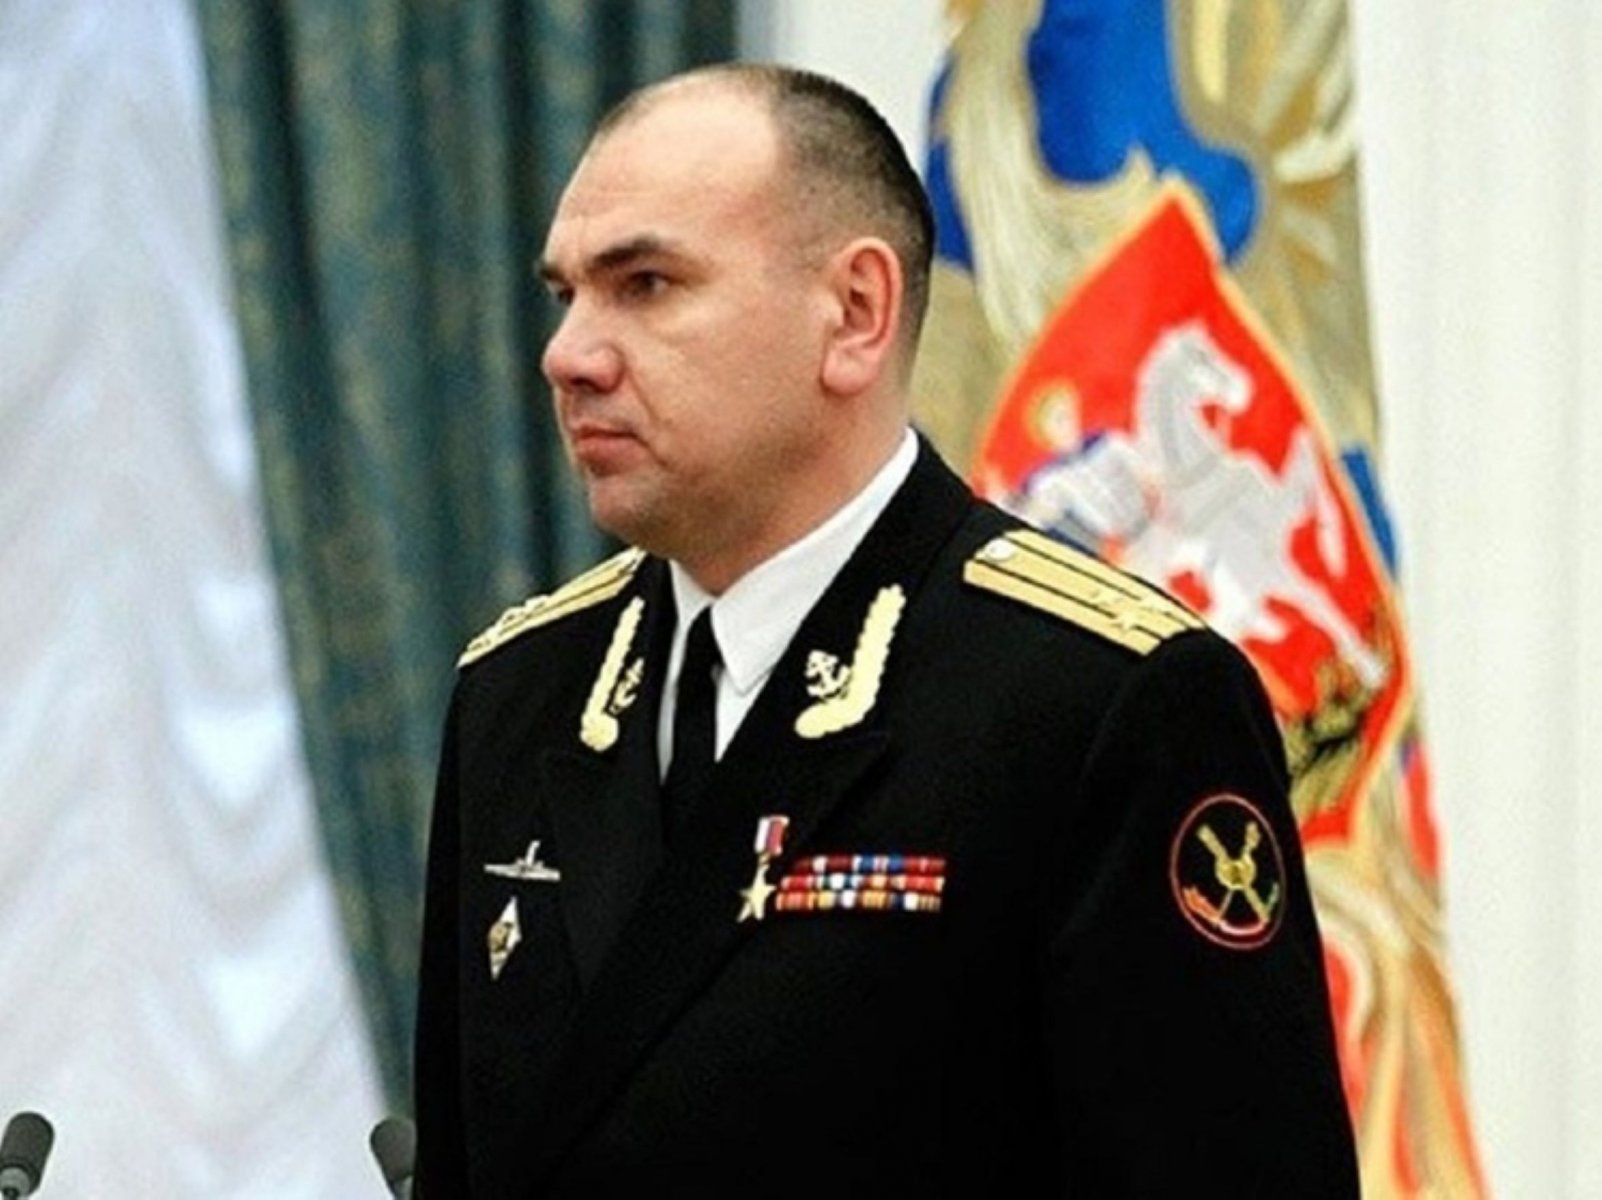 Адмирала Александра Моисеева представили как врио главкома ВМФ на церемонии в Кронштадте